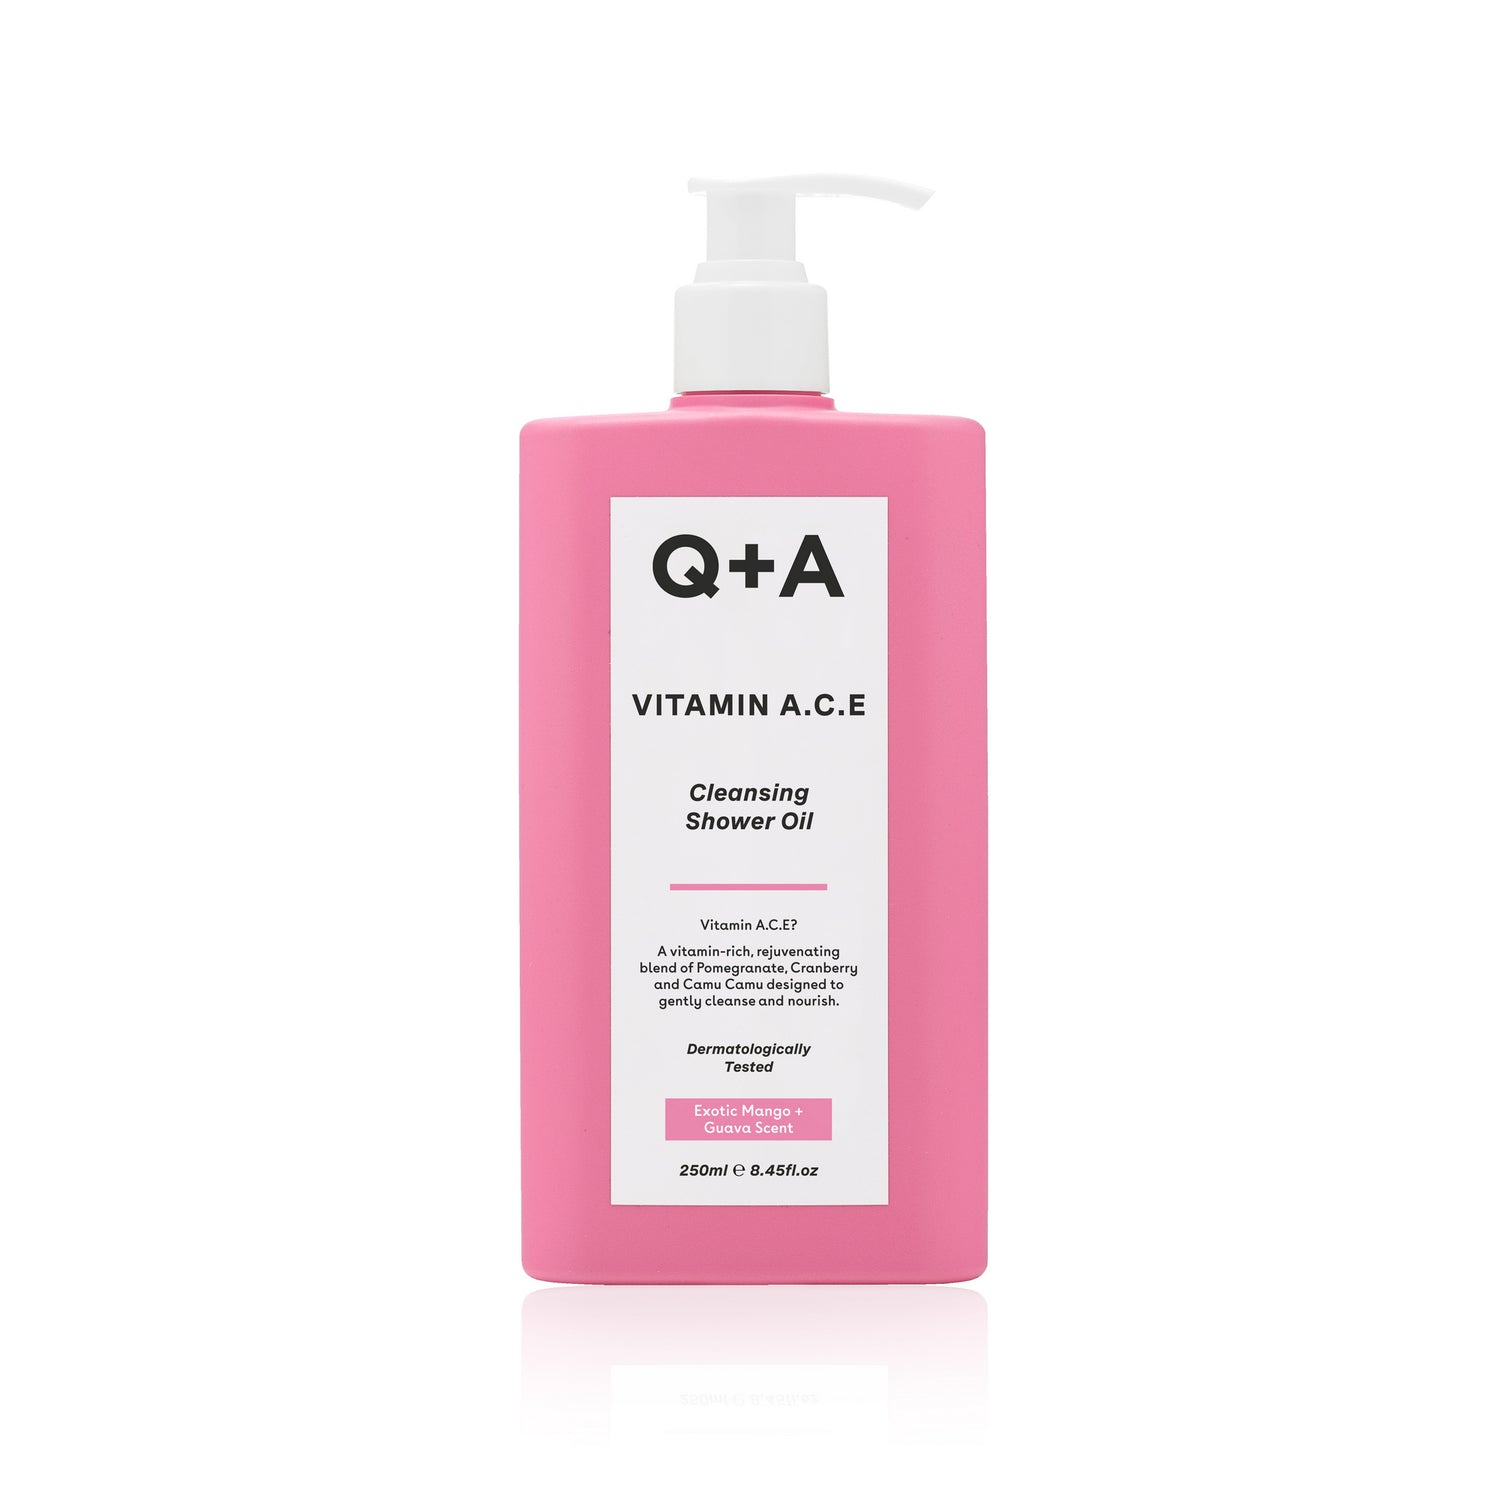 Q+A Vitamin A.C.E Shower Oil 250ml